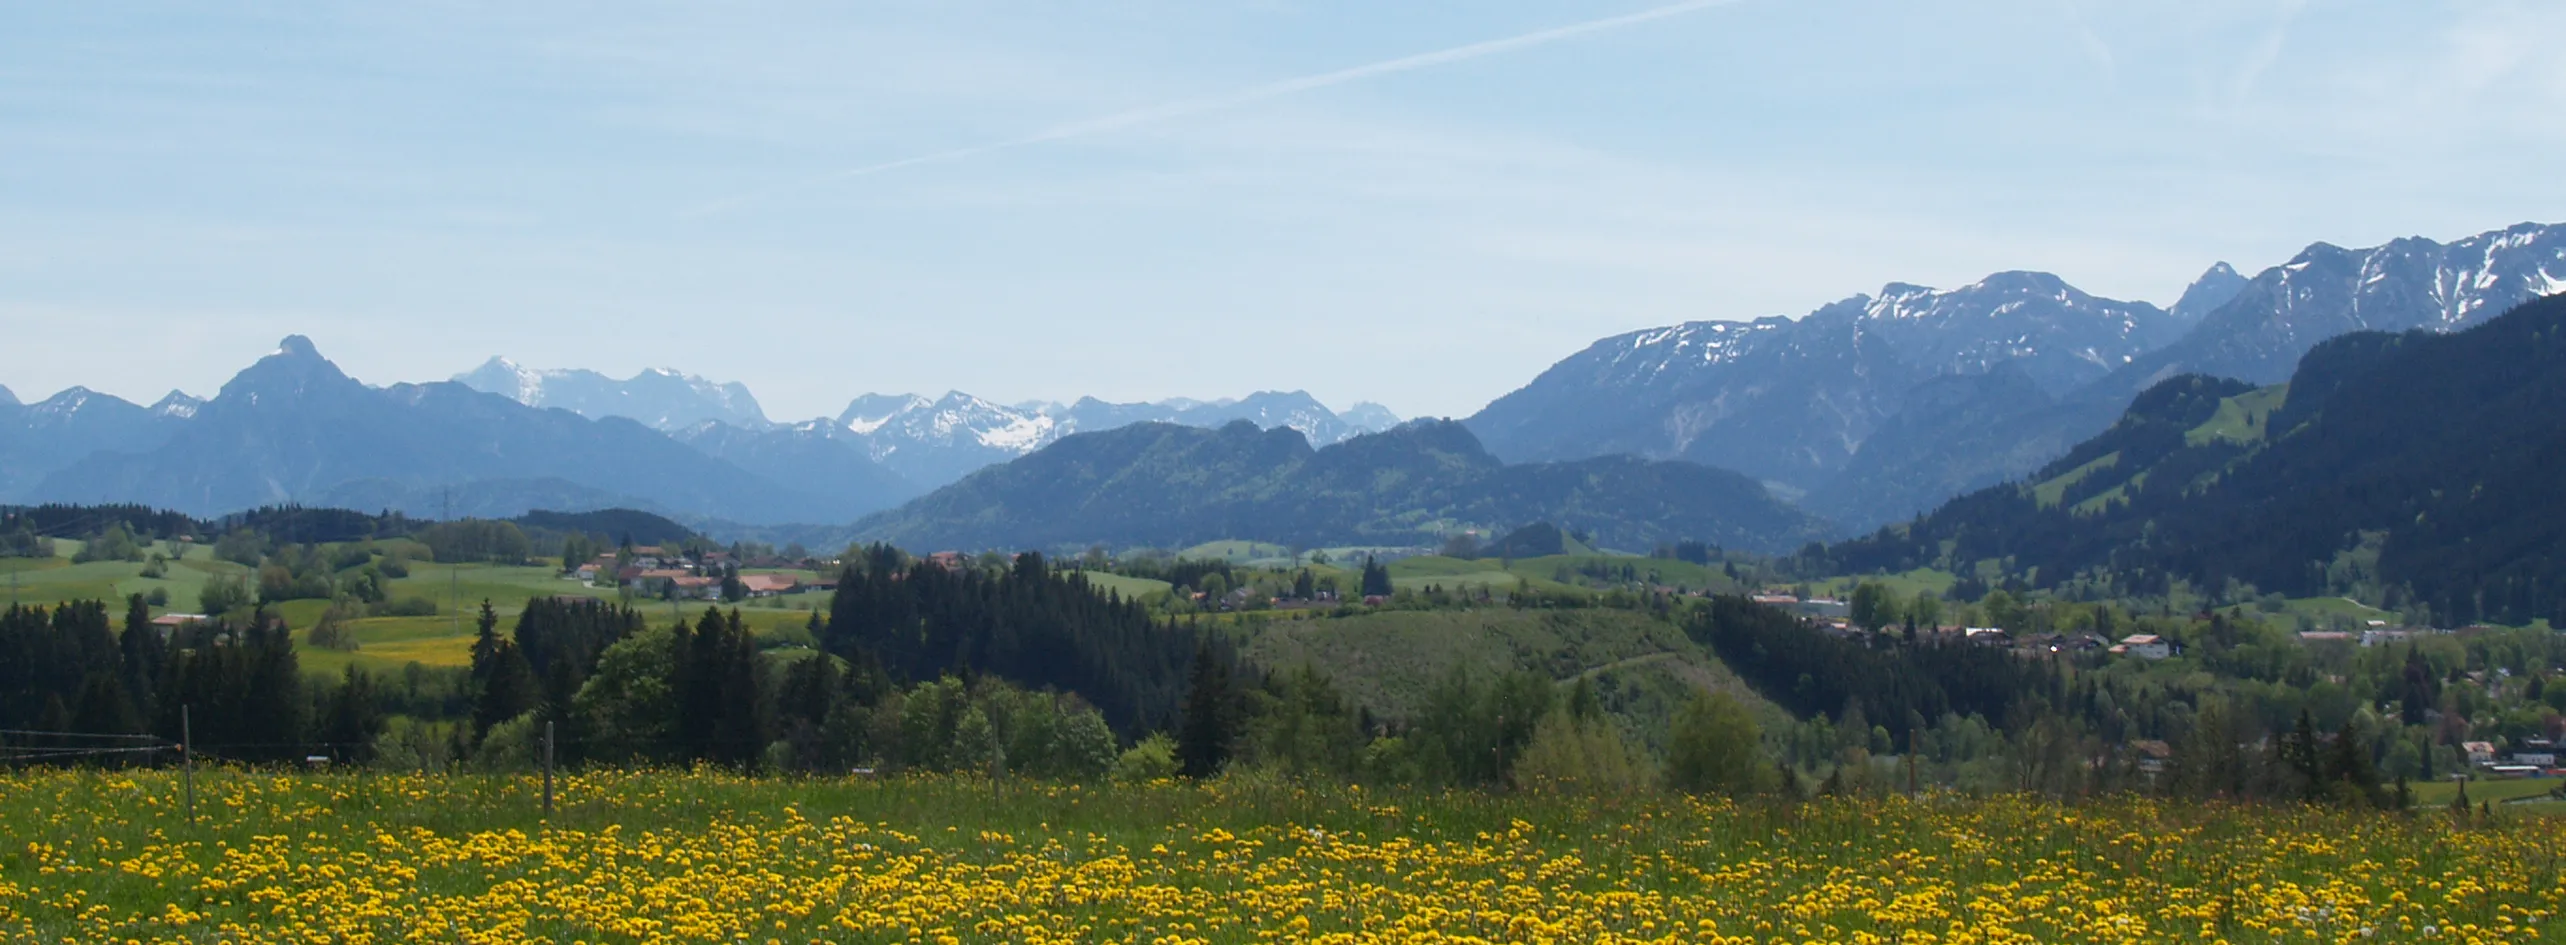 Panorama der Alpenlandschaft im Frühling, wo die Wiese mit gelben Blumen bestückt und die Berge schneeweiß sind.